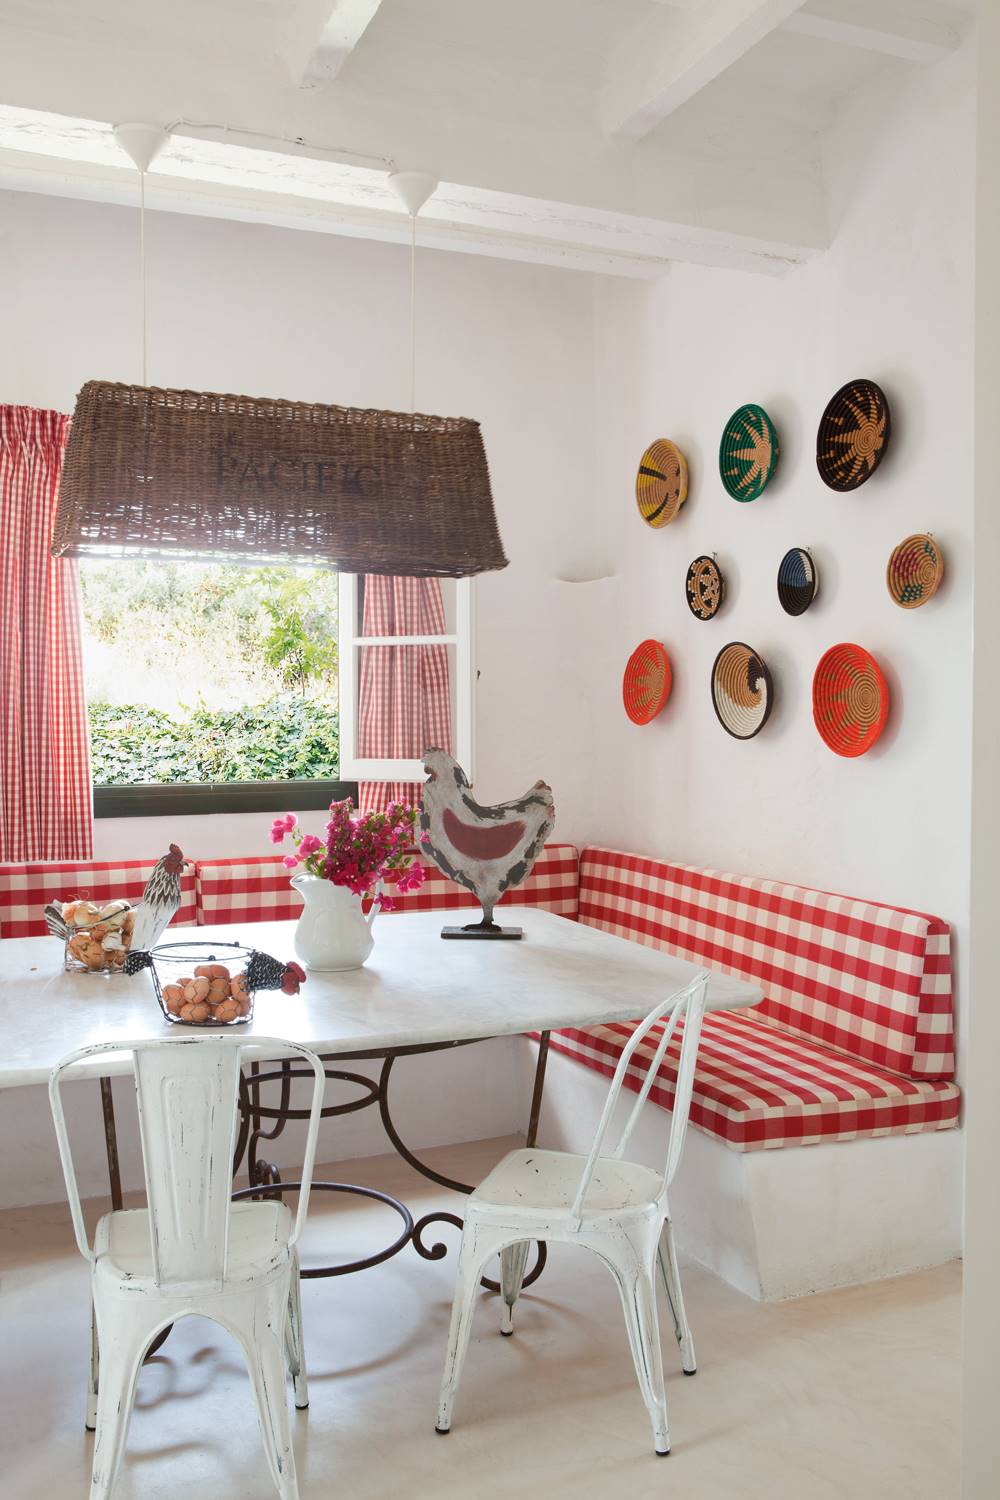 Comedor en blanco con detalles en rojo y composición de platos en la pared